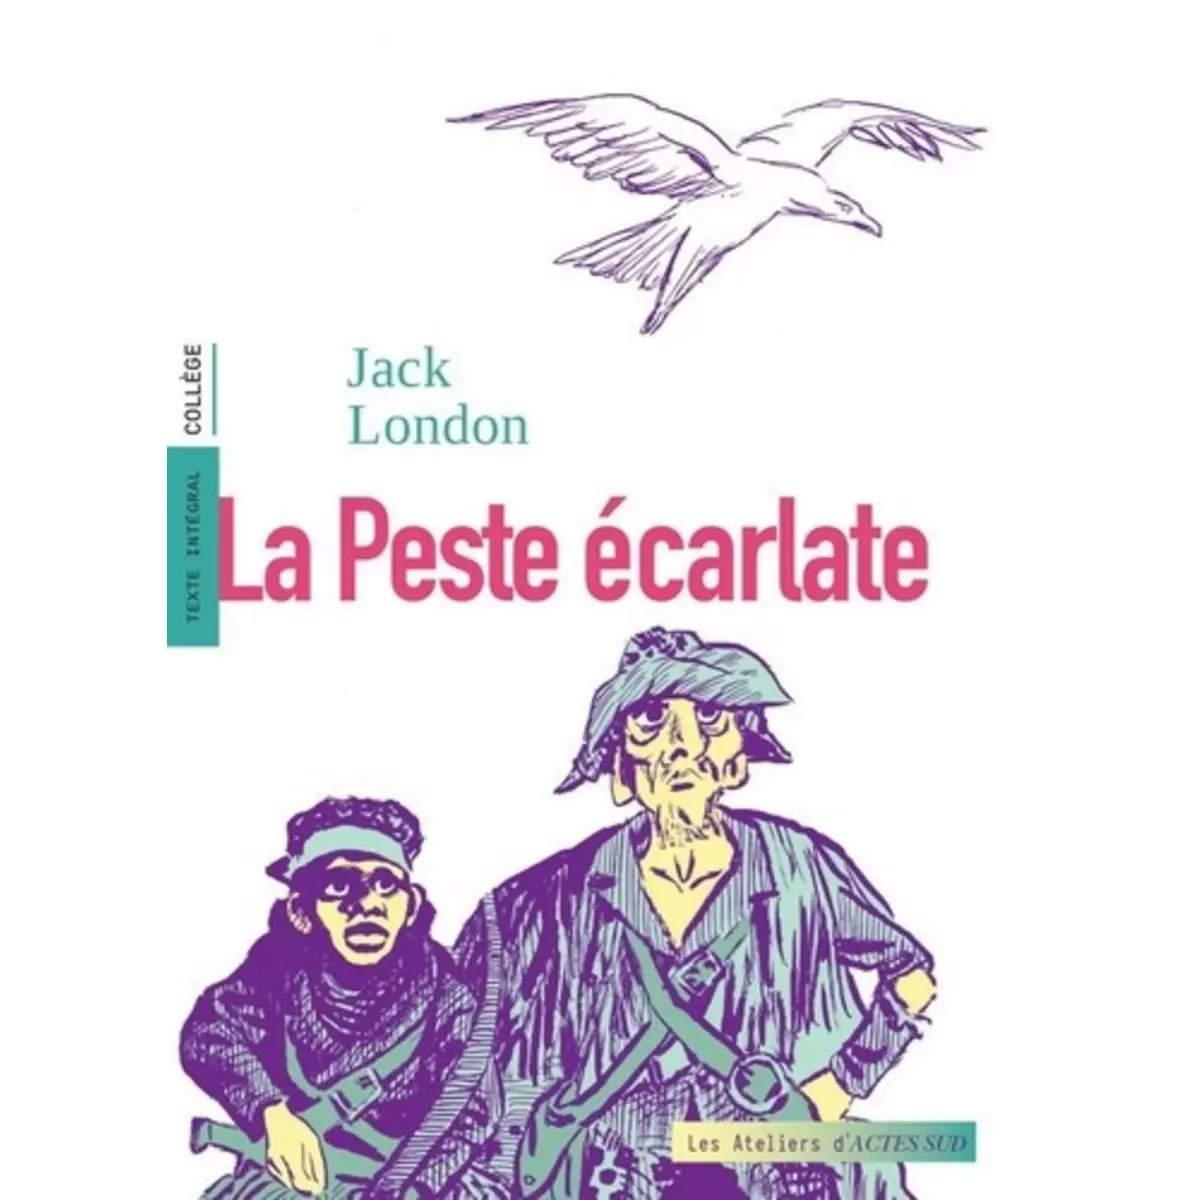  LA PESTE ECARLATE, London Jack